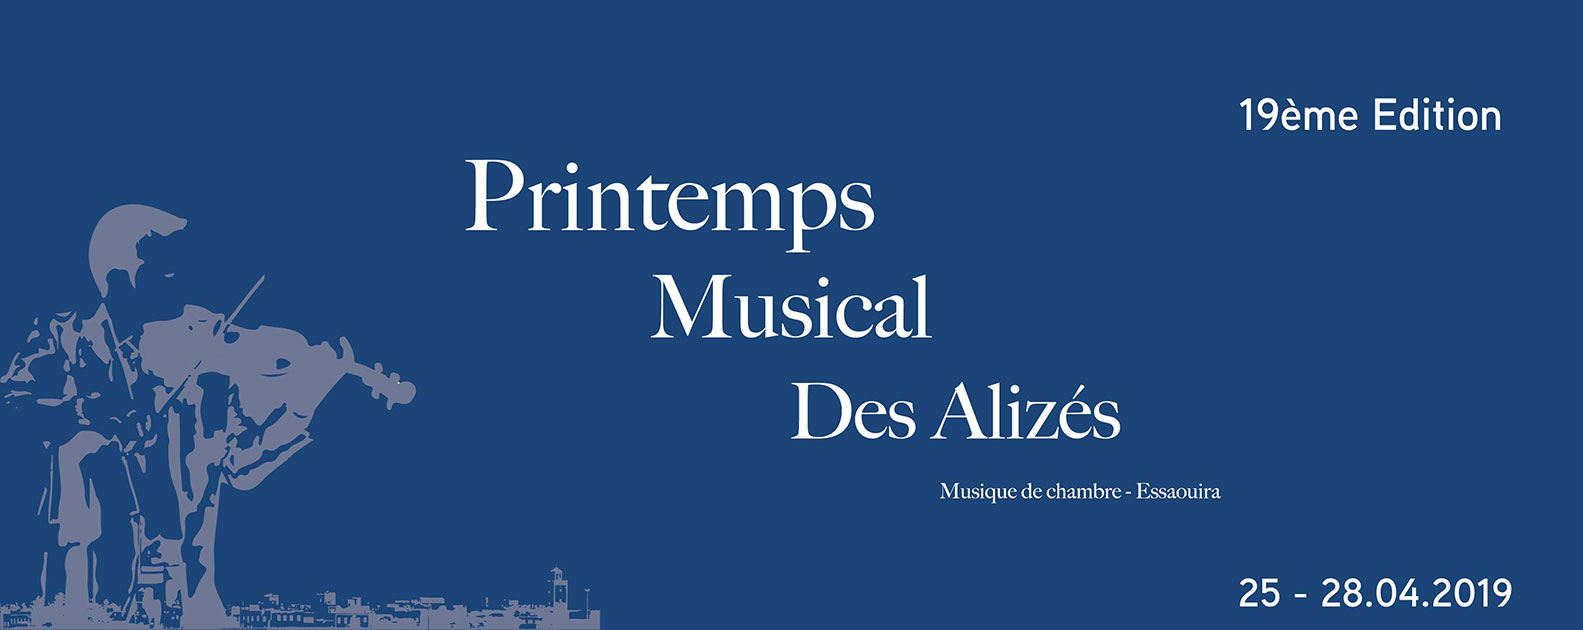 Festival Printemps Musical des Alizés